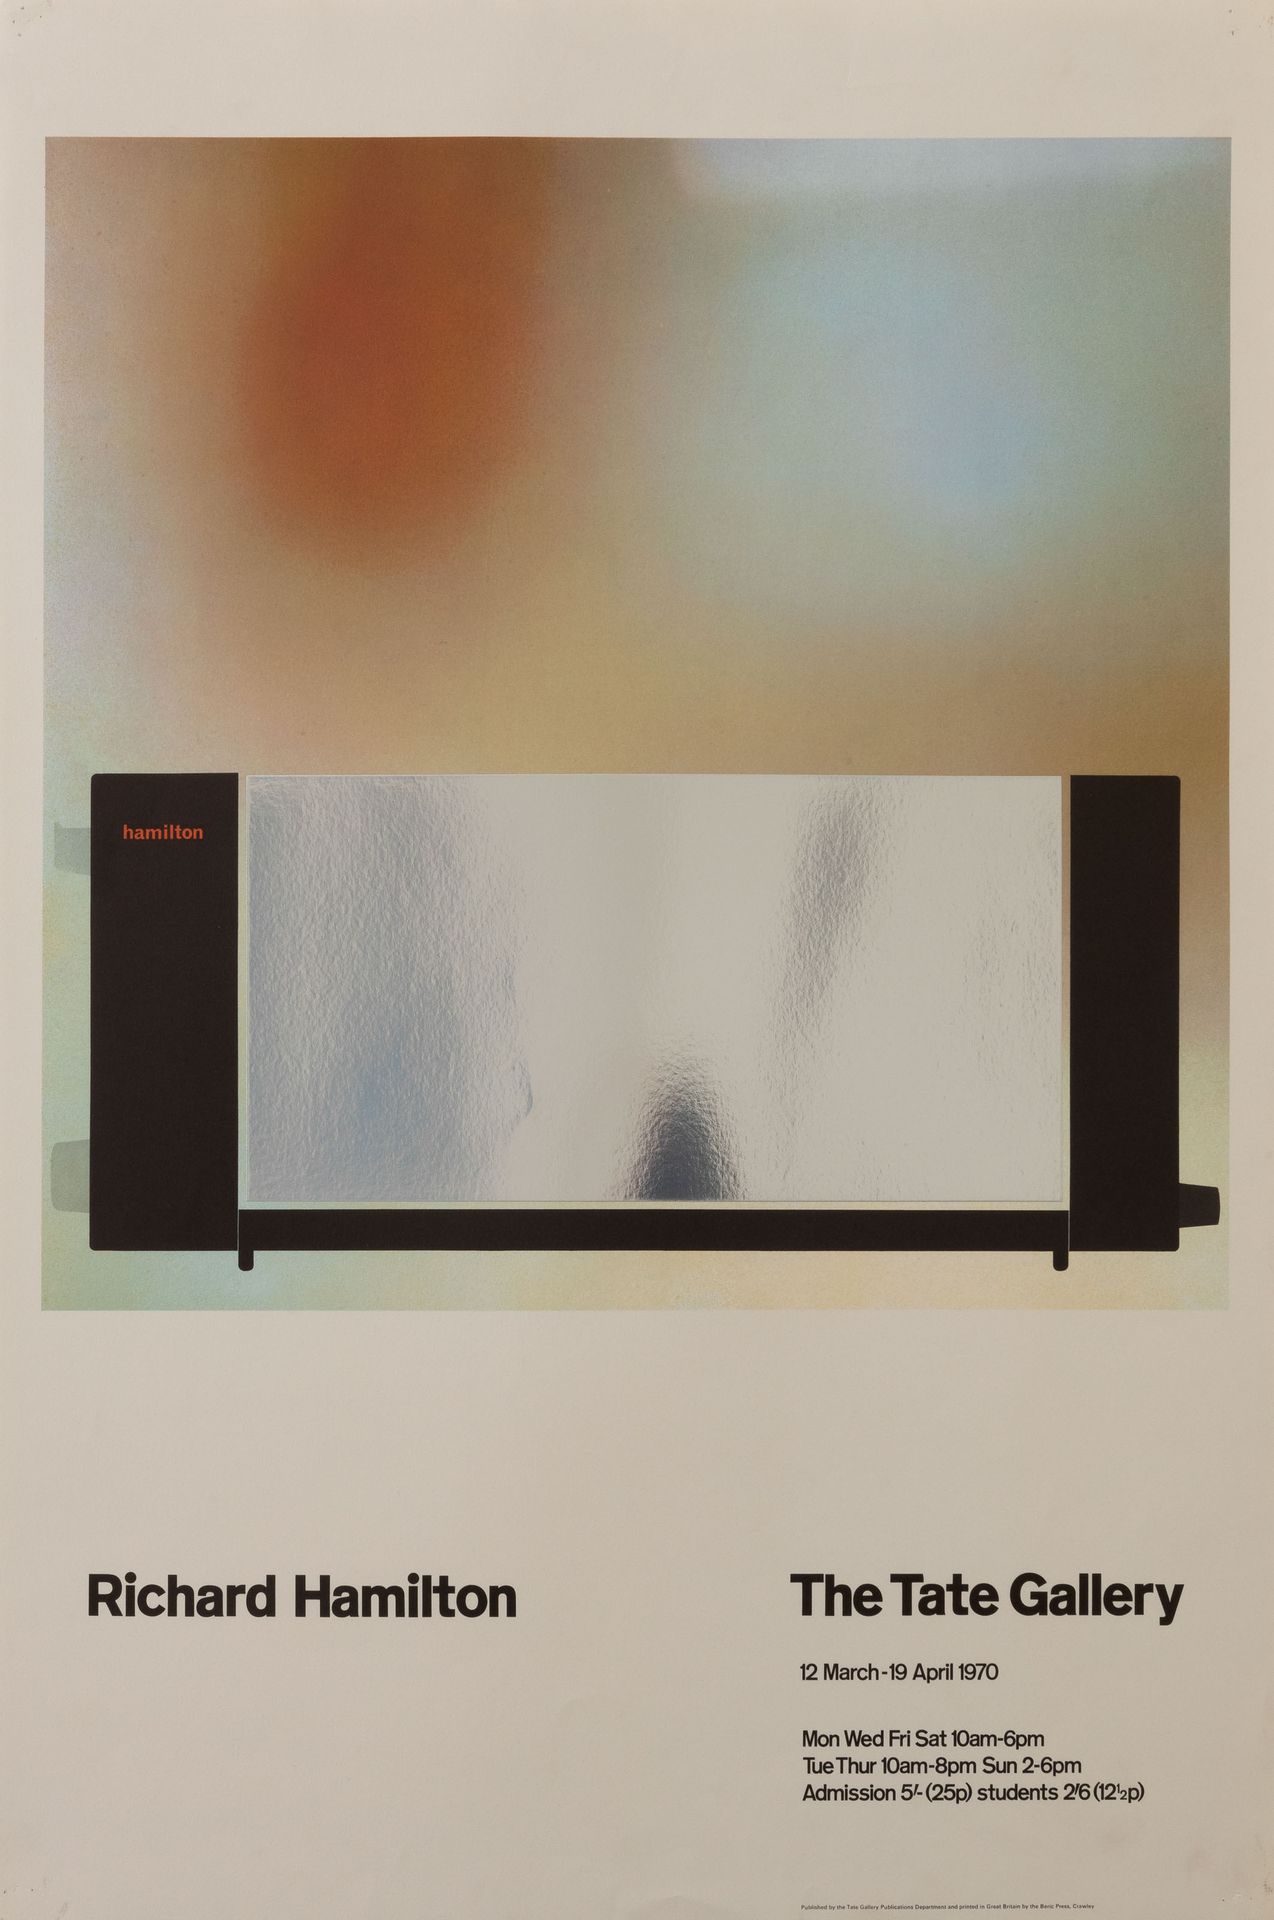 RICHARD HAMILTON (1922-2011) Poster della mostra. Londra, Tate Gallery, 1970. 

&hellip;